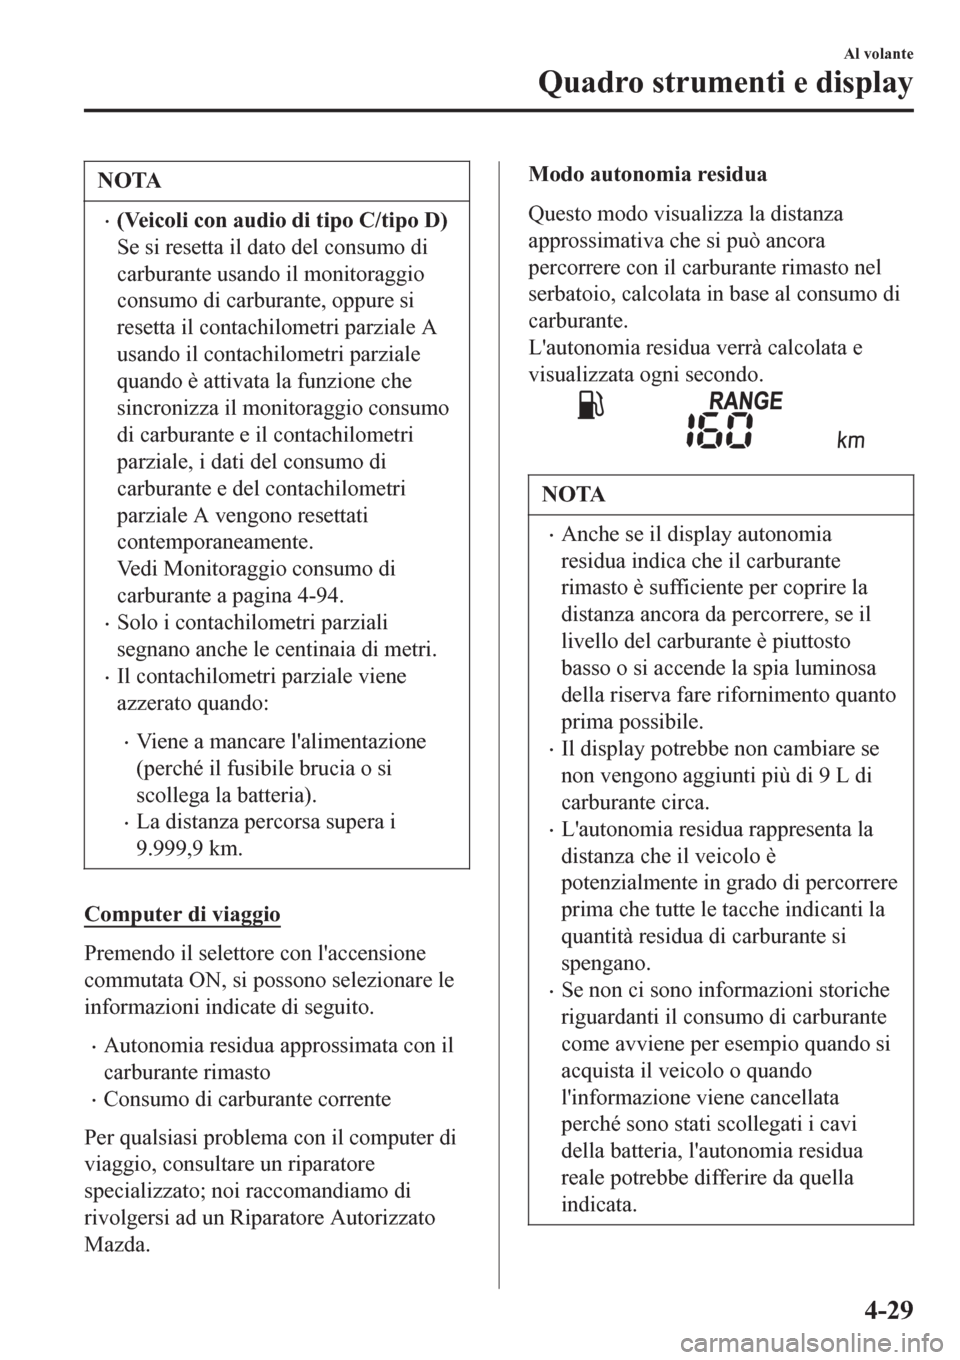 MAZDA MODEL CX-3 2016  Manuale del proprietario (in Italian) NOTA
•(Veicoli con audio di tipo C/tipo D)
Se si resetta il dato del consumo di
carburante usando il monitoraggio
consumo di carburante, oppure si
resetta il contachilometri parziale A
usando il con